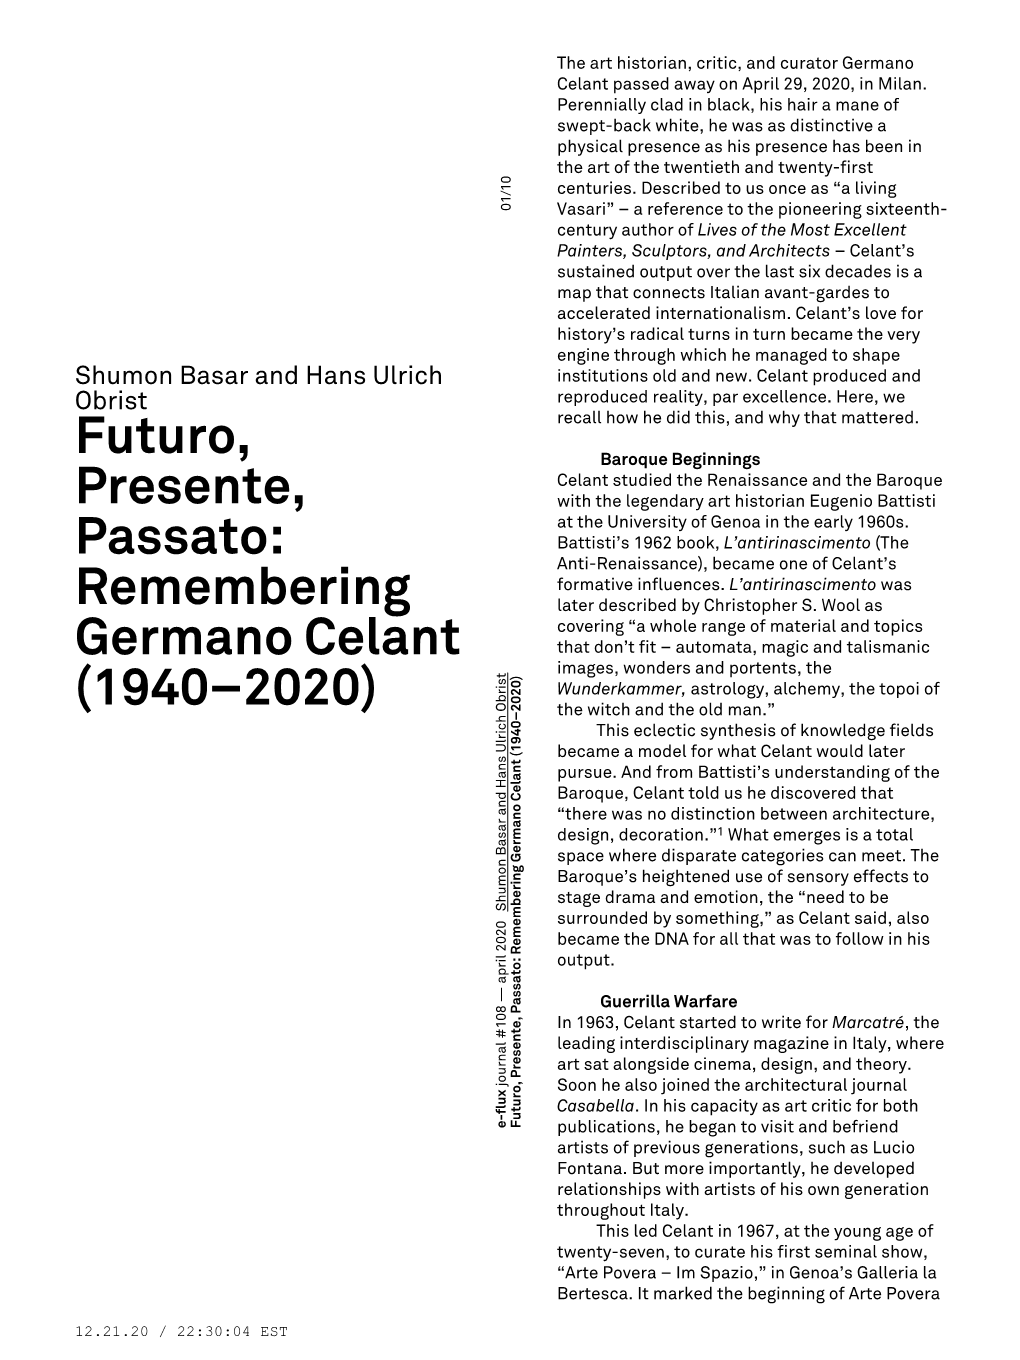 Futuro, Presente, Passato: Remembering Germano Celant